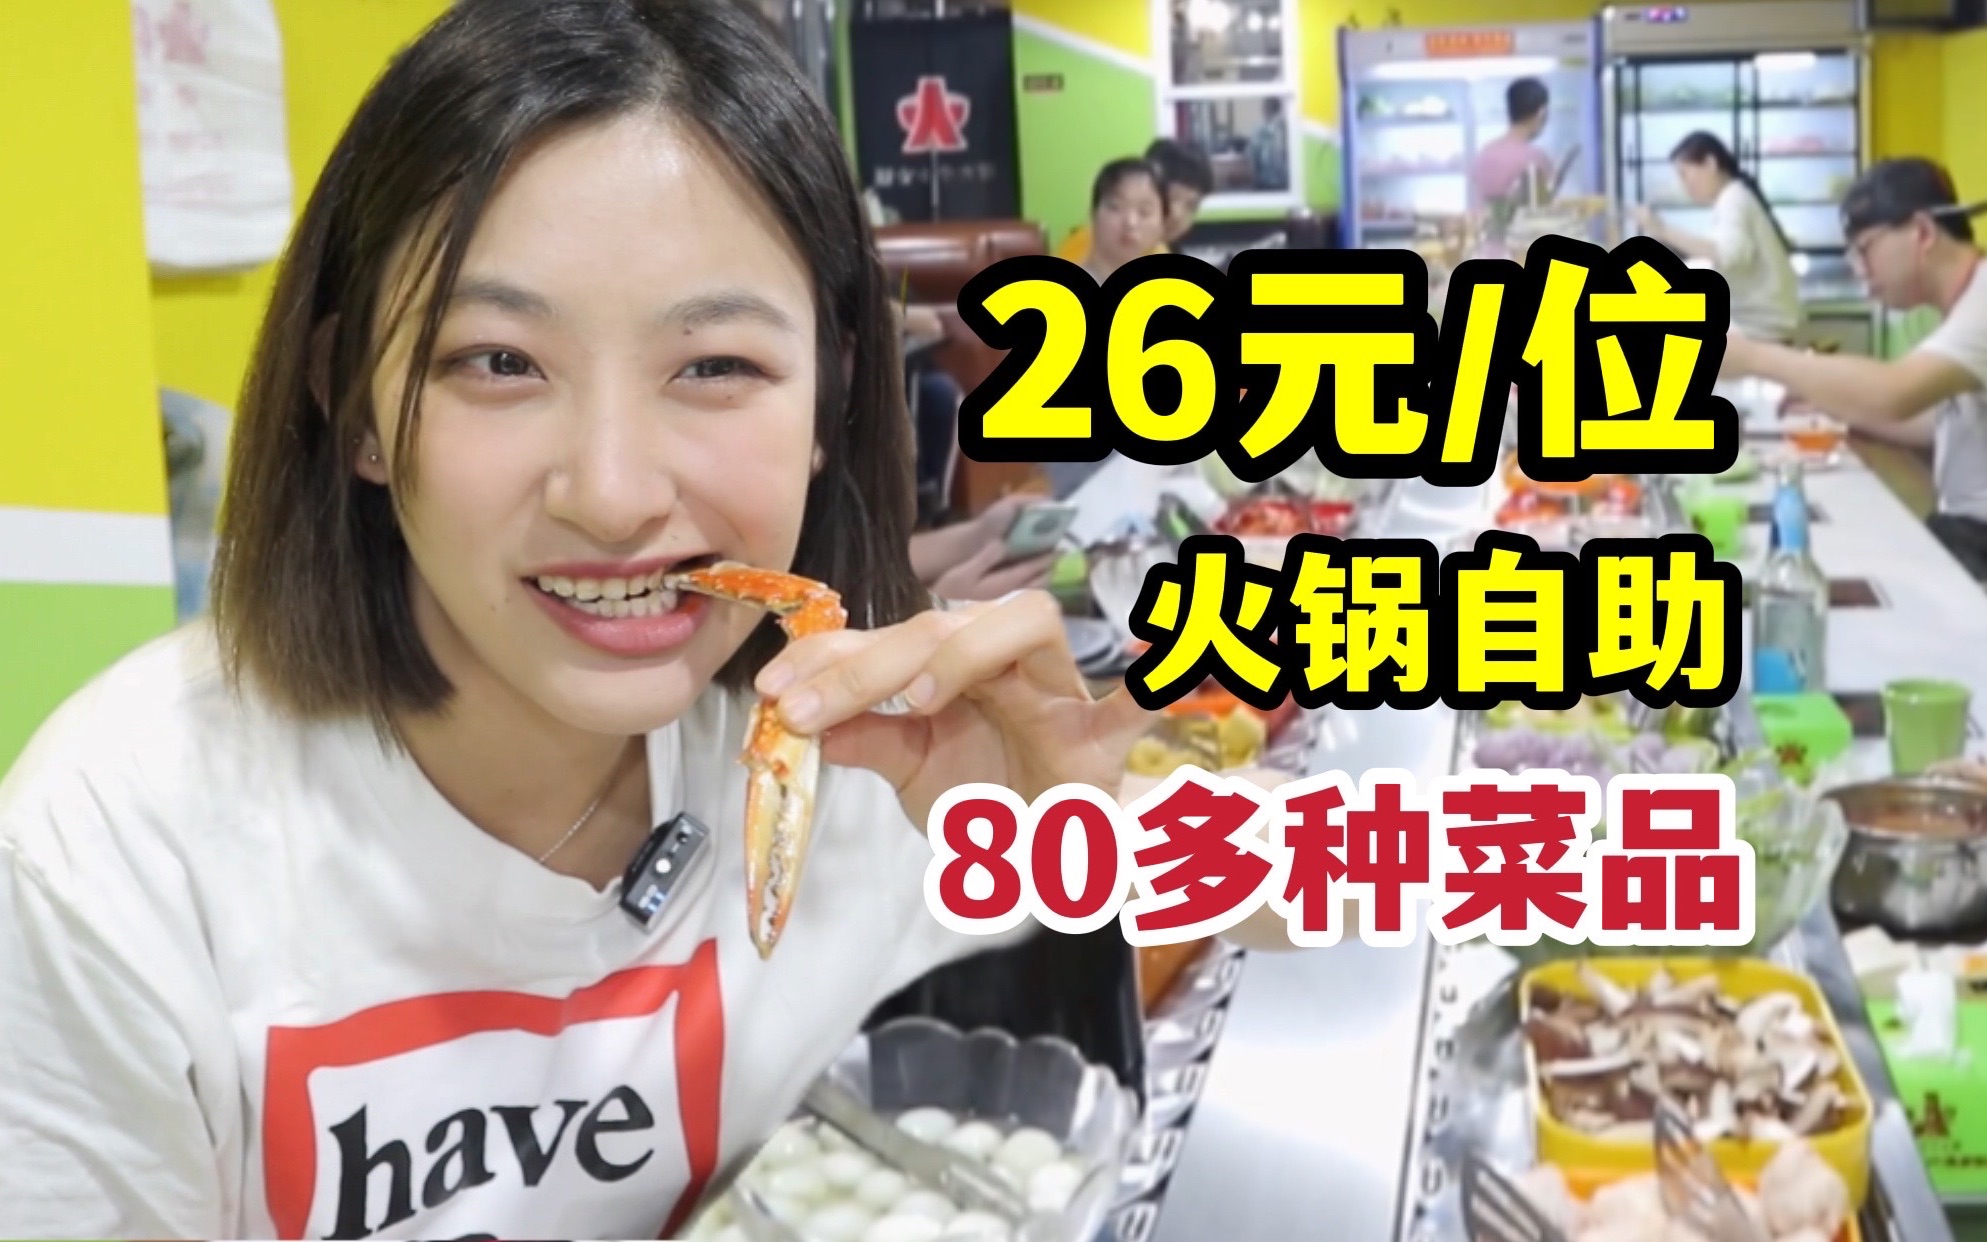 天津最便宜火锅自助！26元一位80多种菜品随便吃，竟然还有生蚝海参蟹腿？